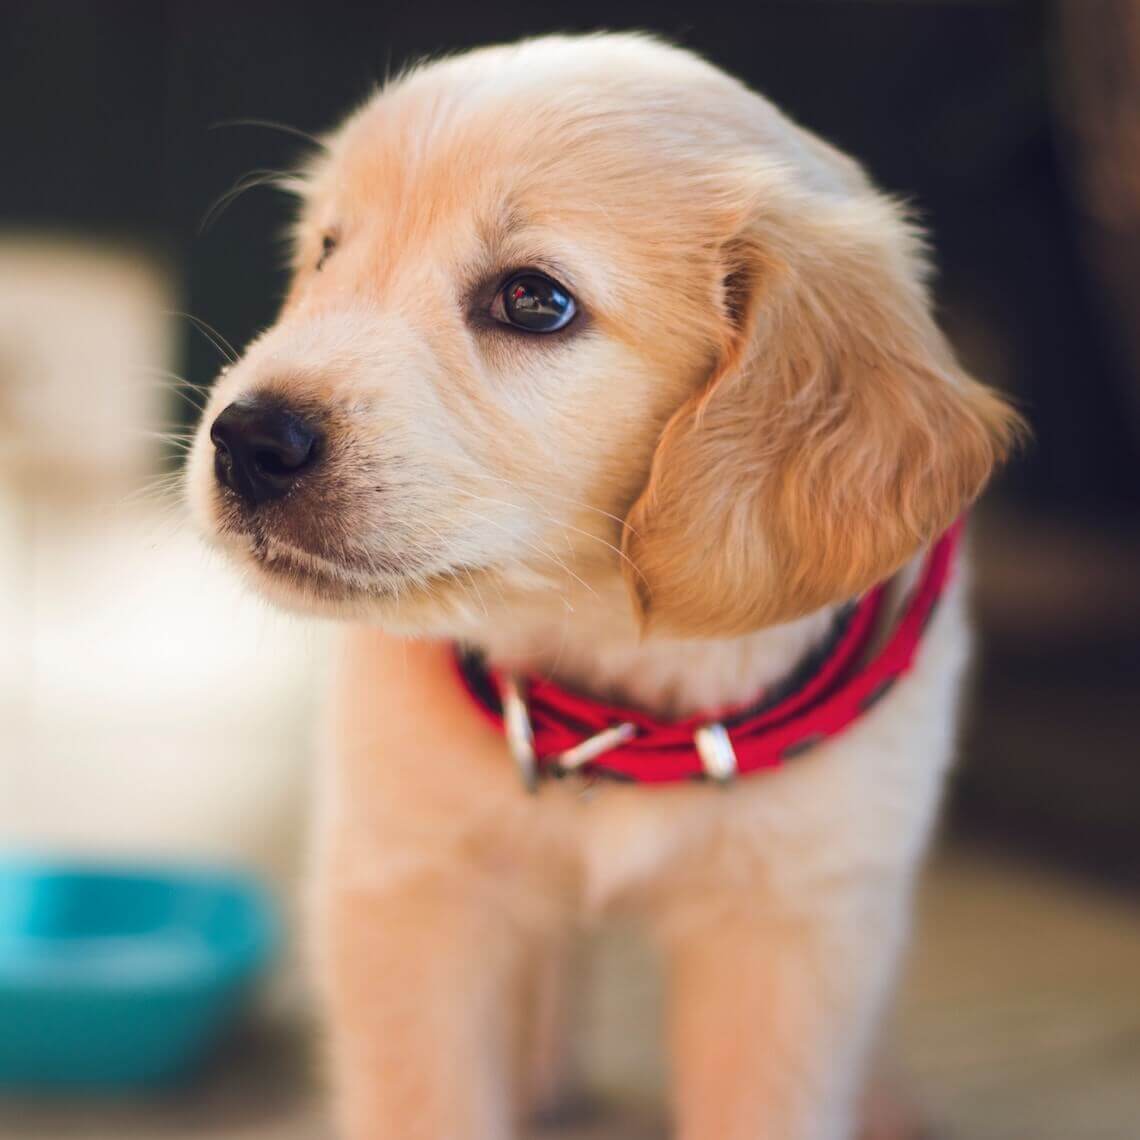 globaal Luxe weekend Pup kopen: waar op letten? - Dierenartspraktijk Bezuidenhout